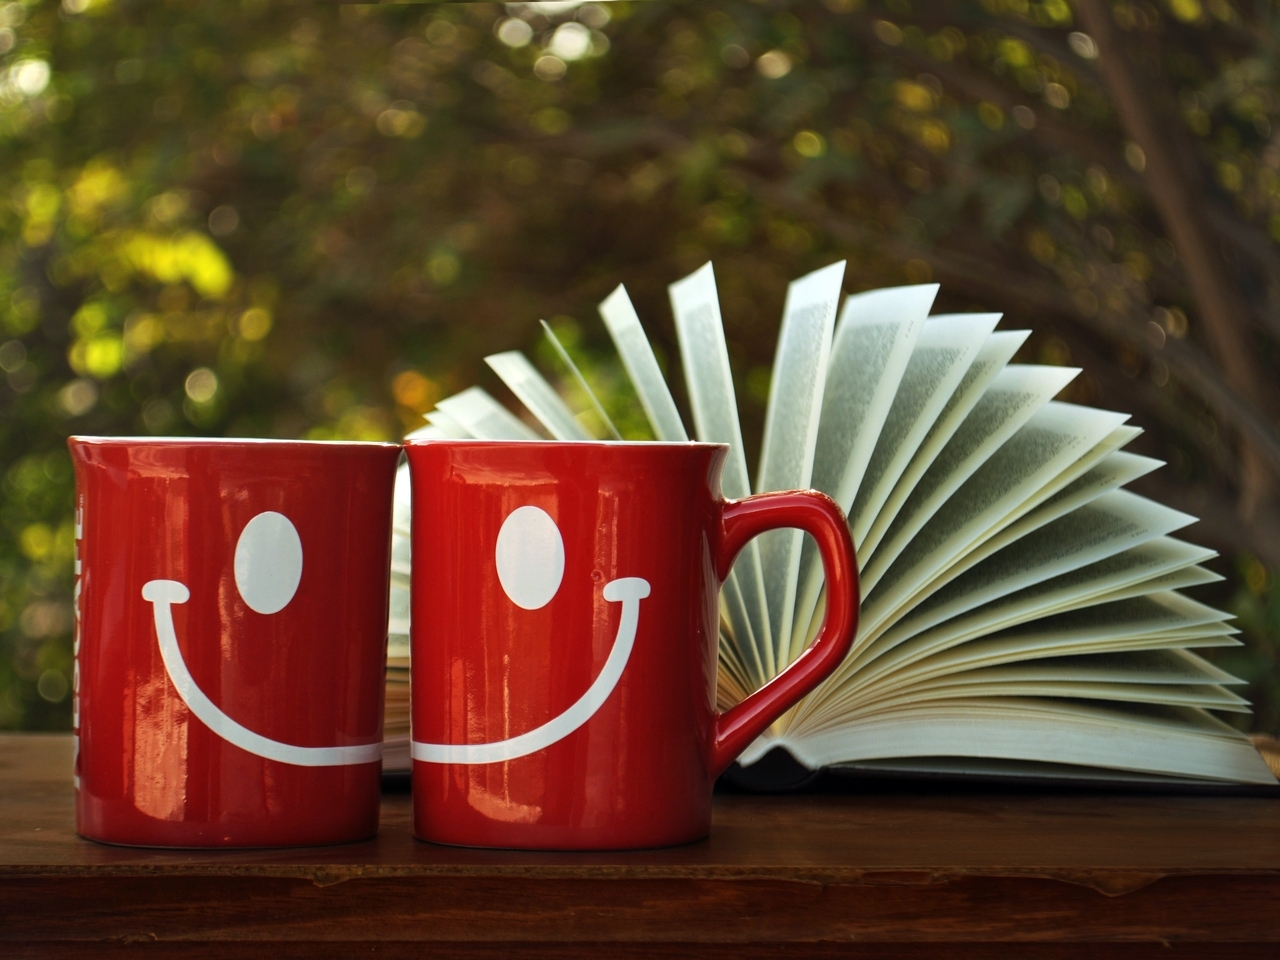 Картинка: Кружки, улыбка, настроение, красный, книга, листы